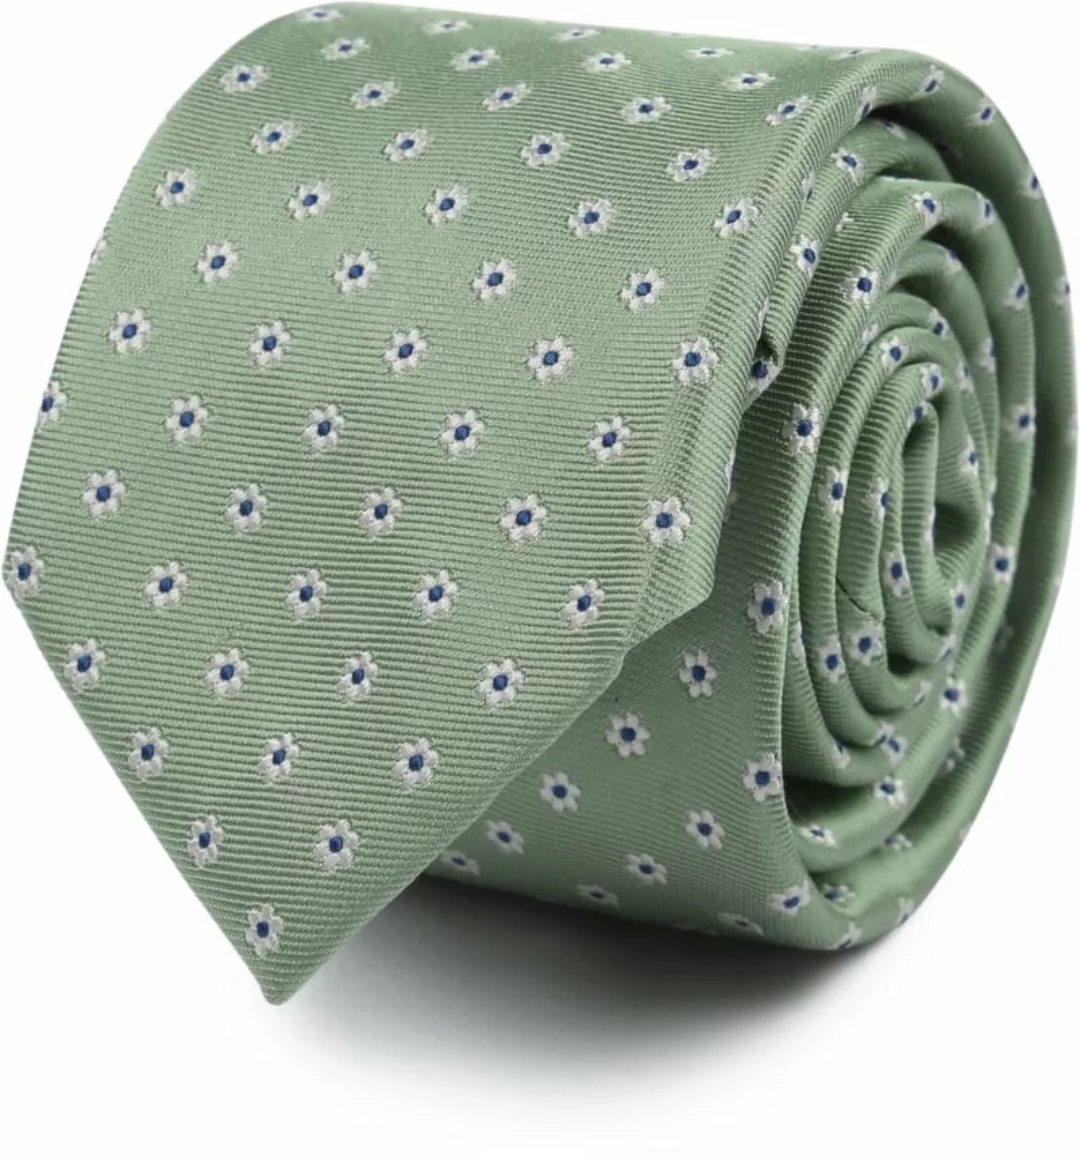 Suitable Krawatte Seide Mini Blumen Grün - günstig online kaufen